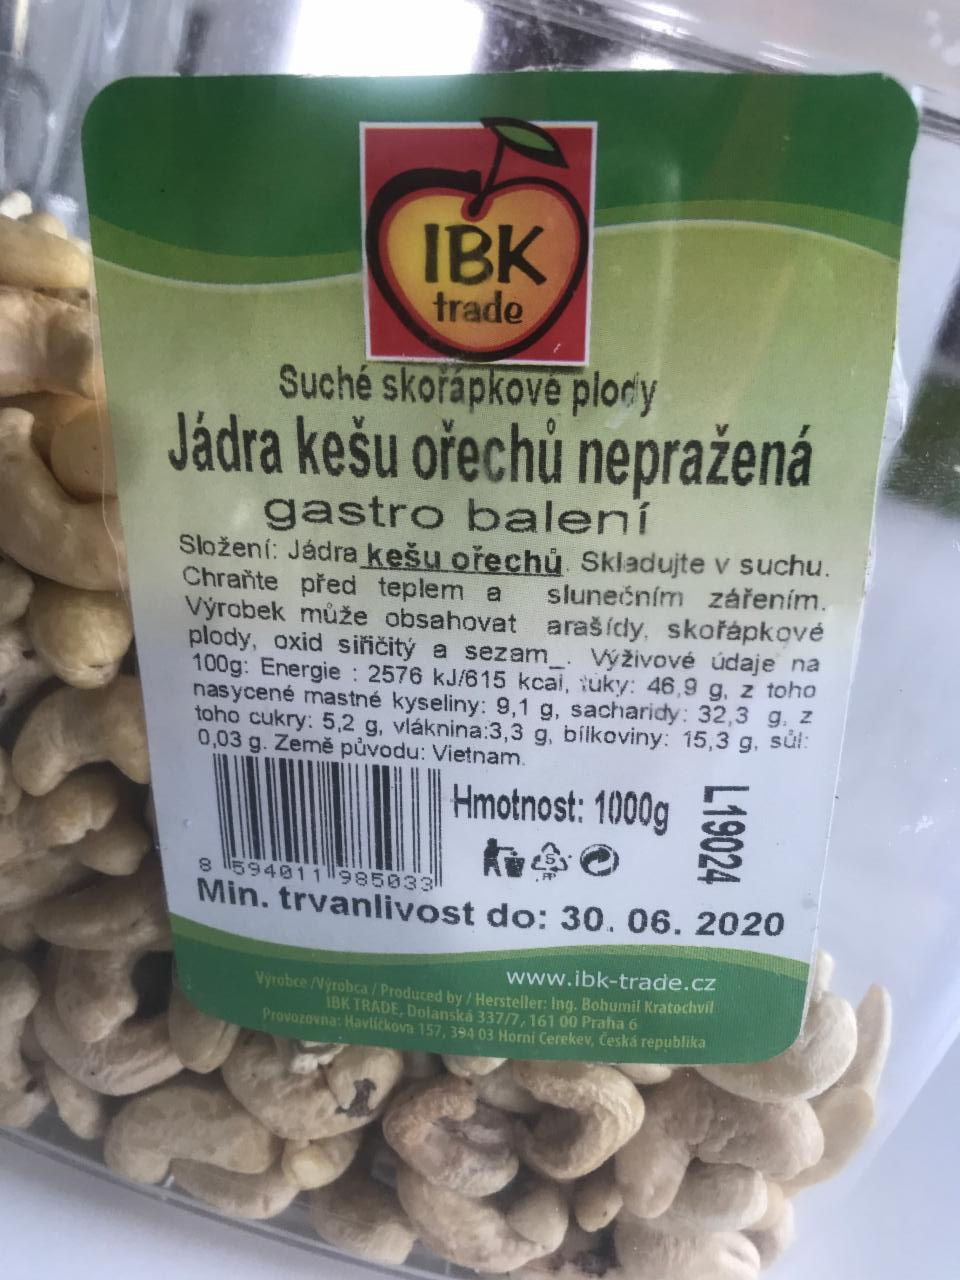 Fotografie - Jádra kešu ořechů nepražená IBK trade